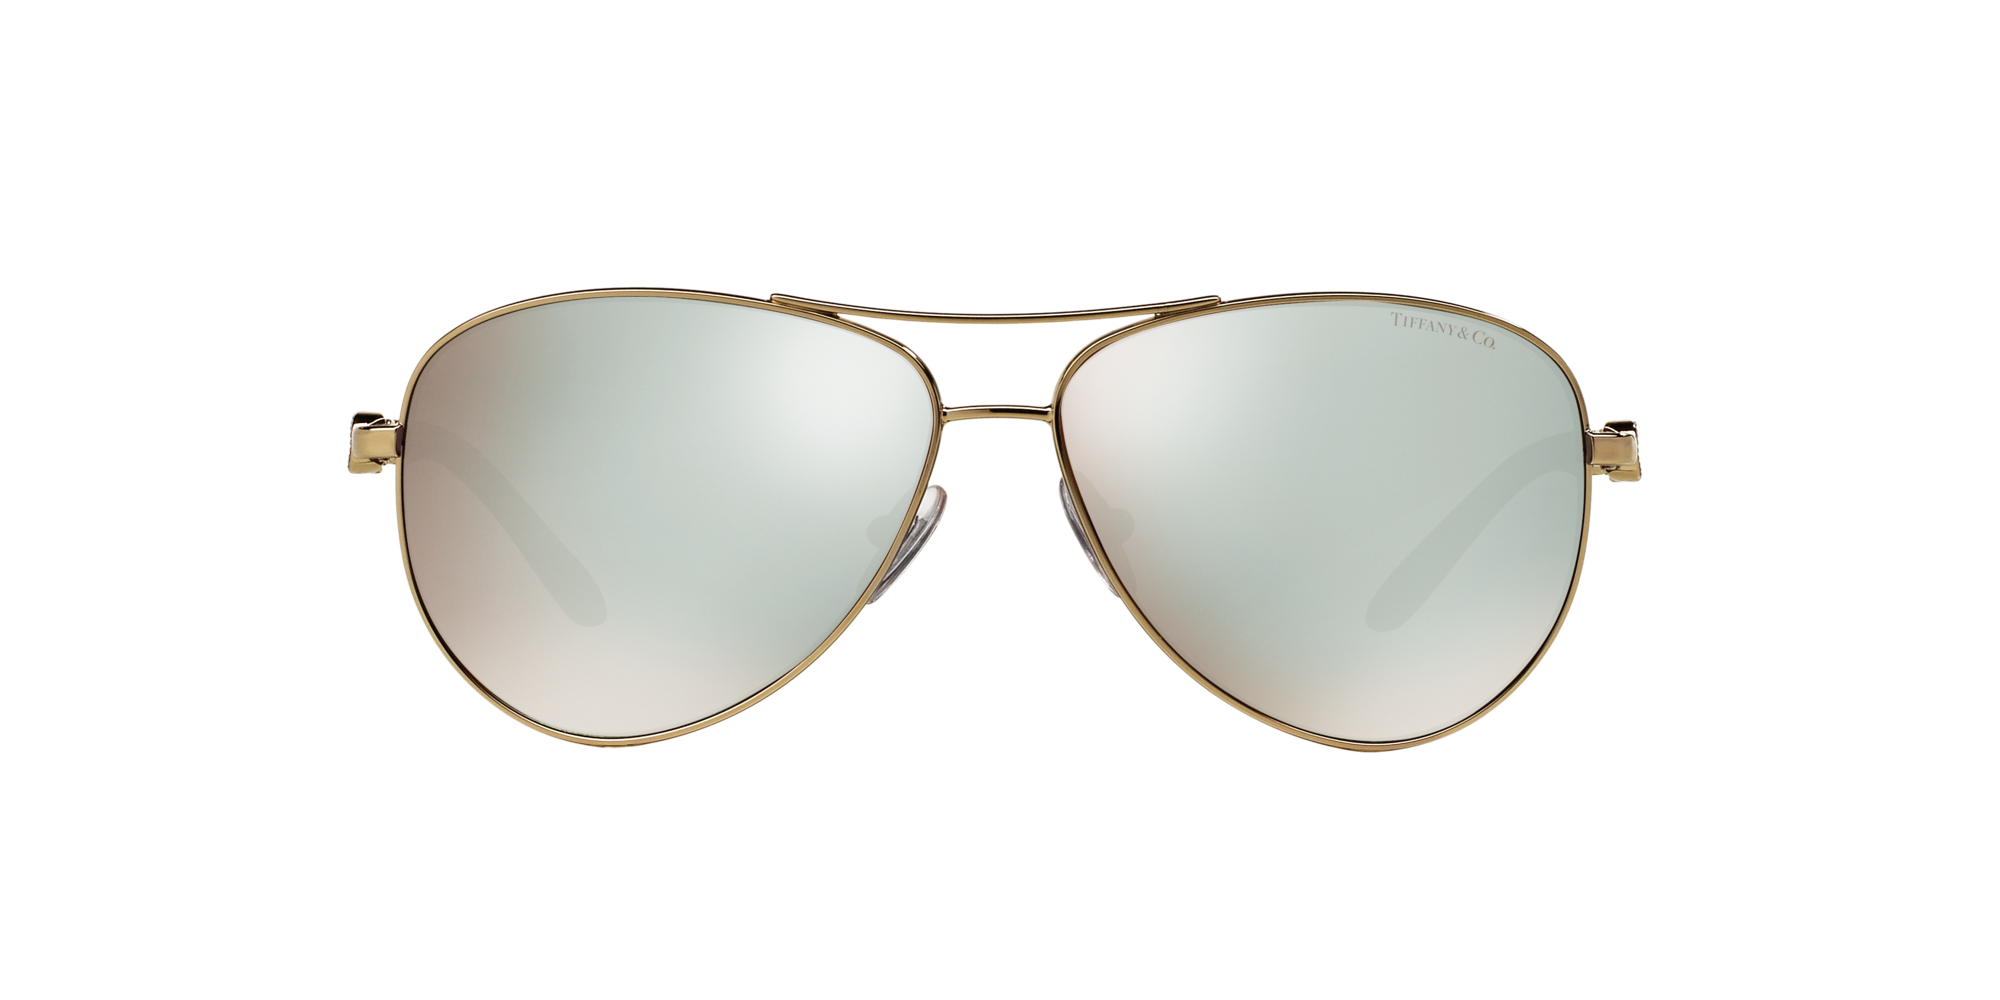 tiffany infinity aviator sunglasses